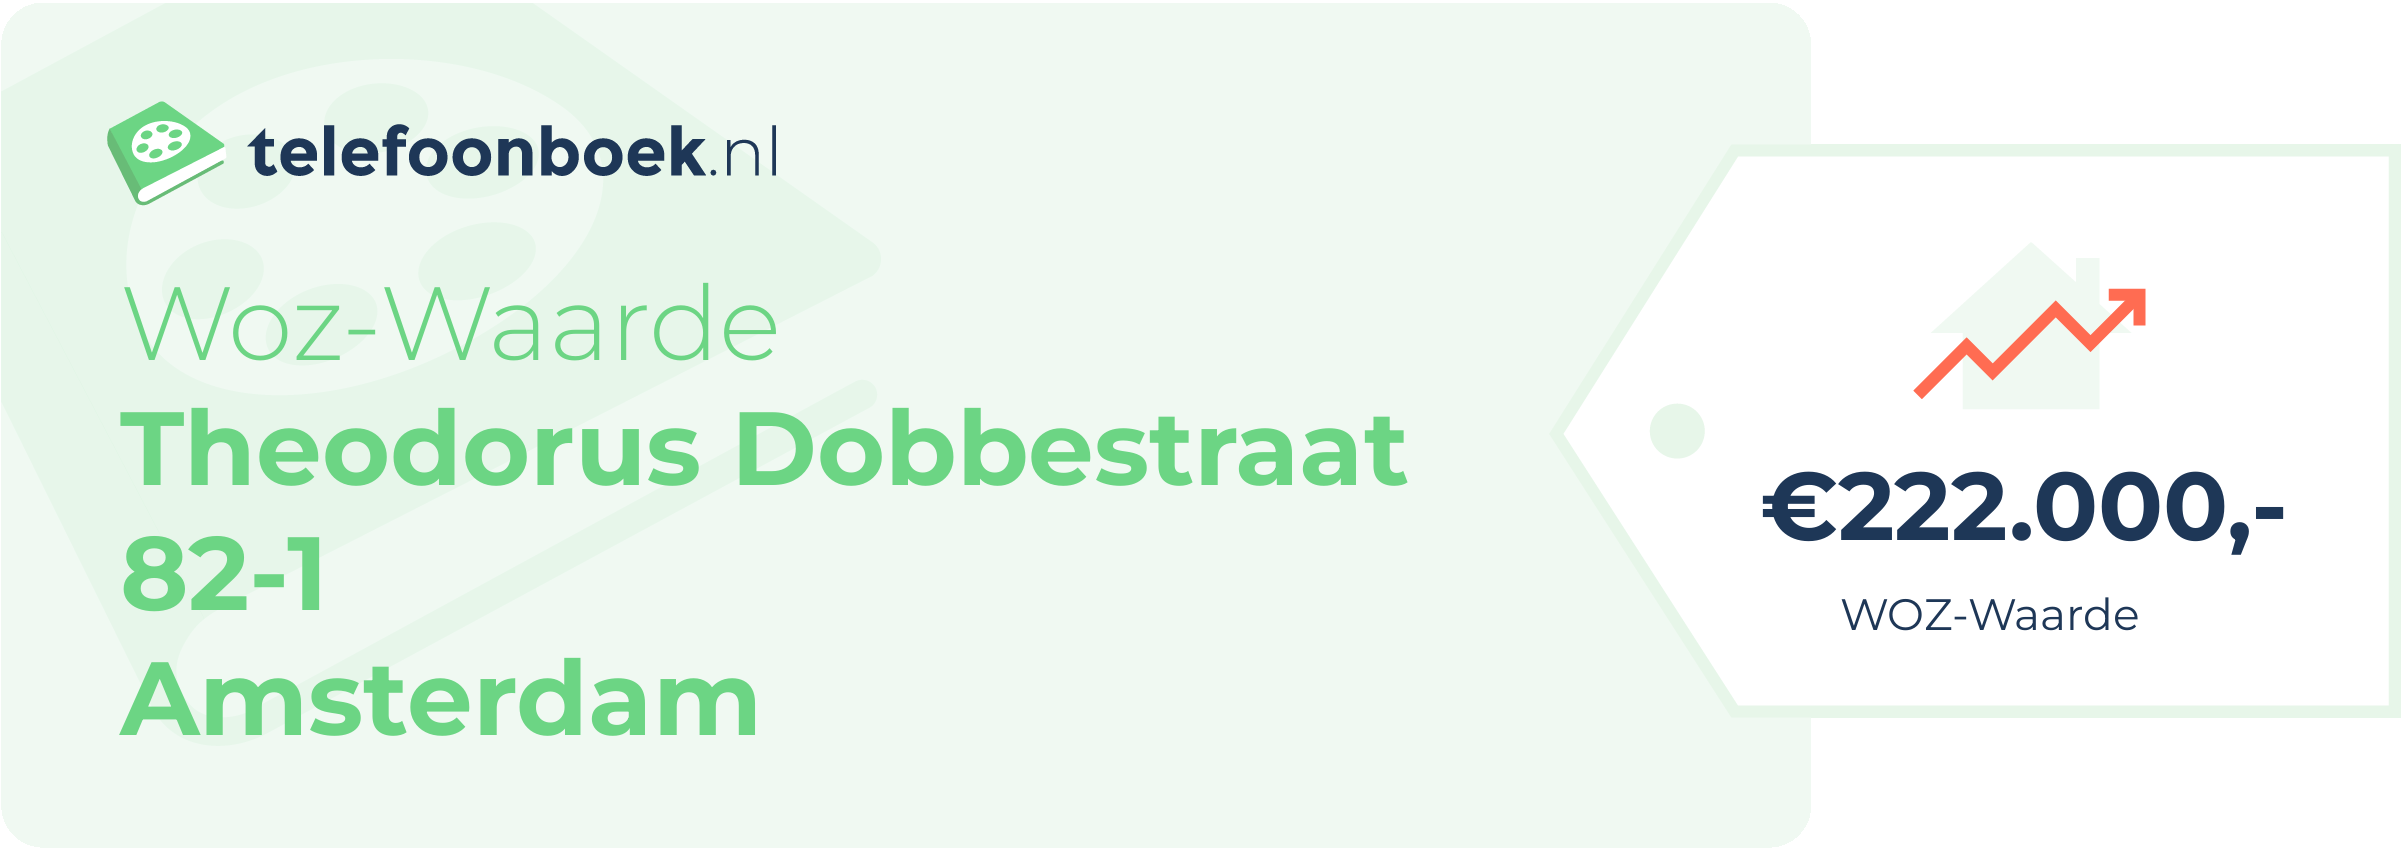 WOZ-waarde Theodorus Dobbestraat 82-1 Amsterdam